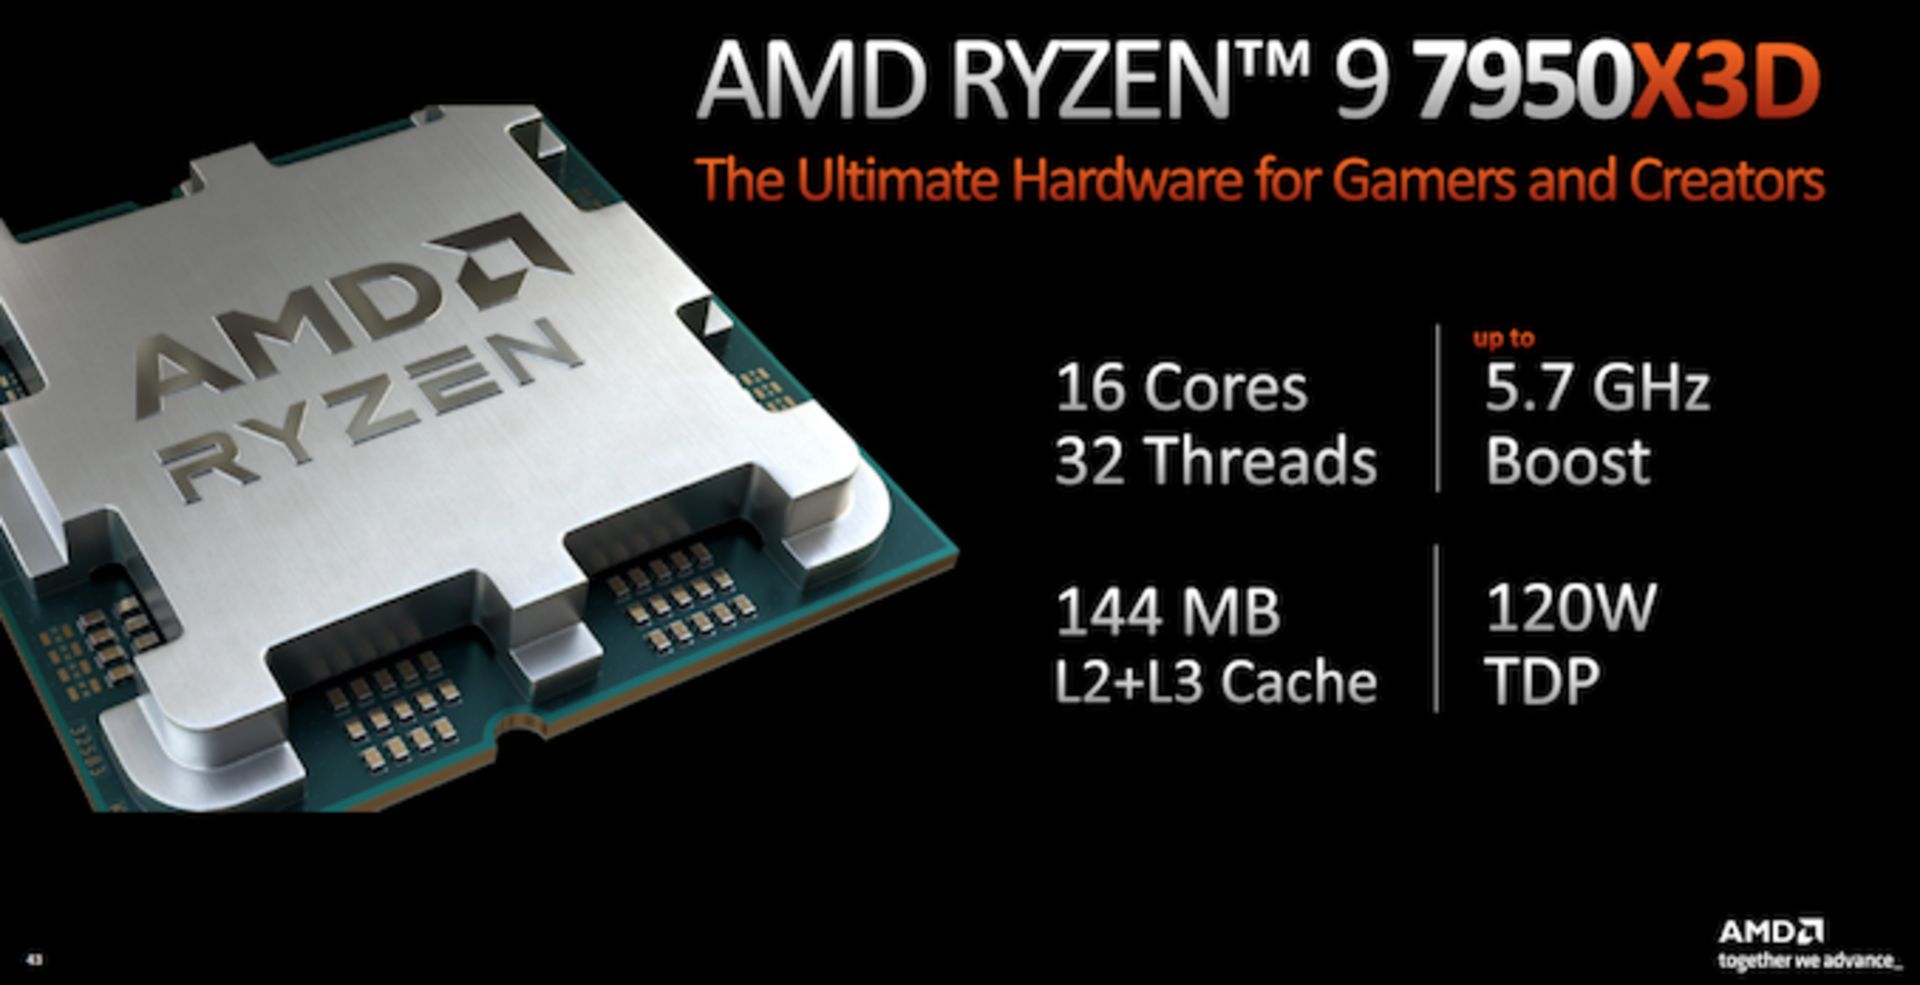 AMD Ryzen 9 7950X3D Spec